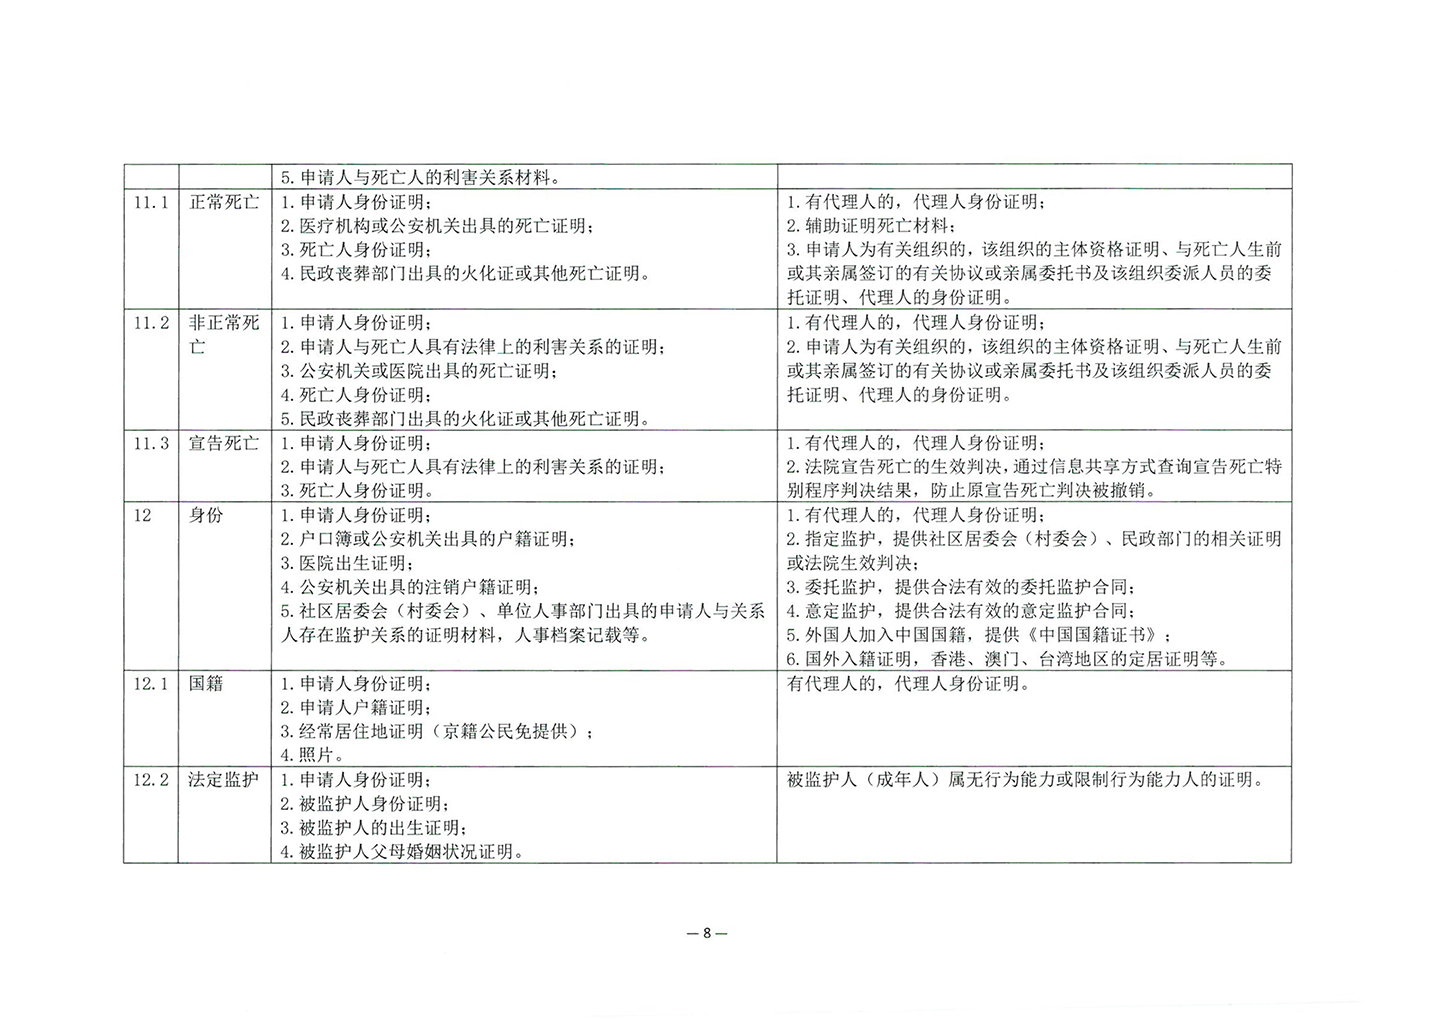 010417243466_03北京市公证协会关于印发《公证机构受理公证事项事务申请证明材料清单》的通知_10